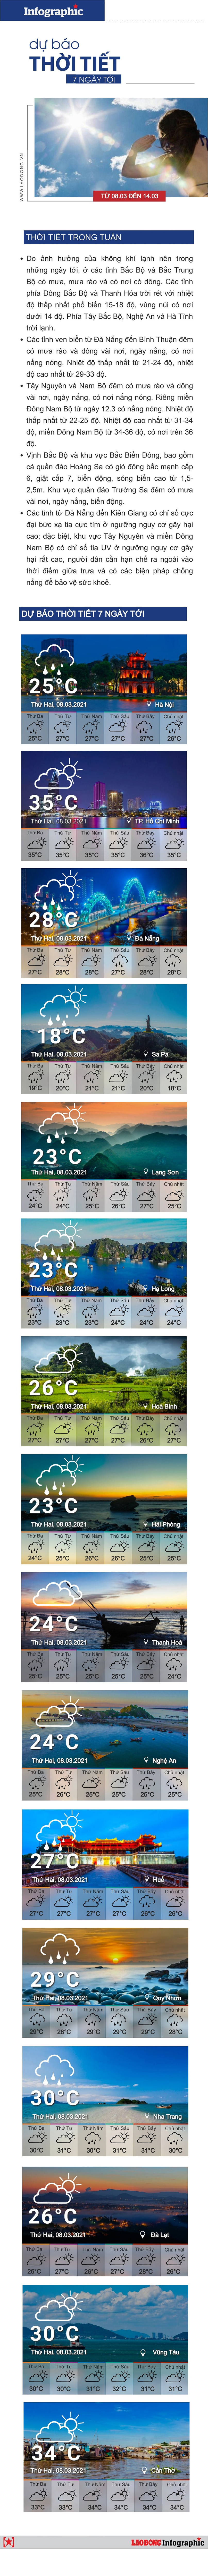 Dự báo thời tiết 7 ngày tới: Nam Bộ nắng nóng, Bắc bộ mưa rét